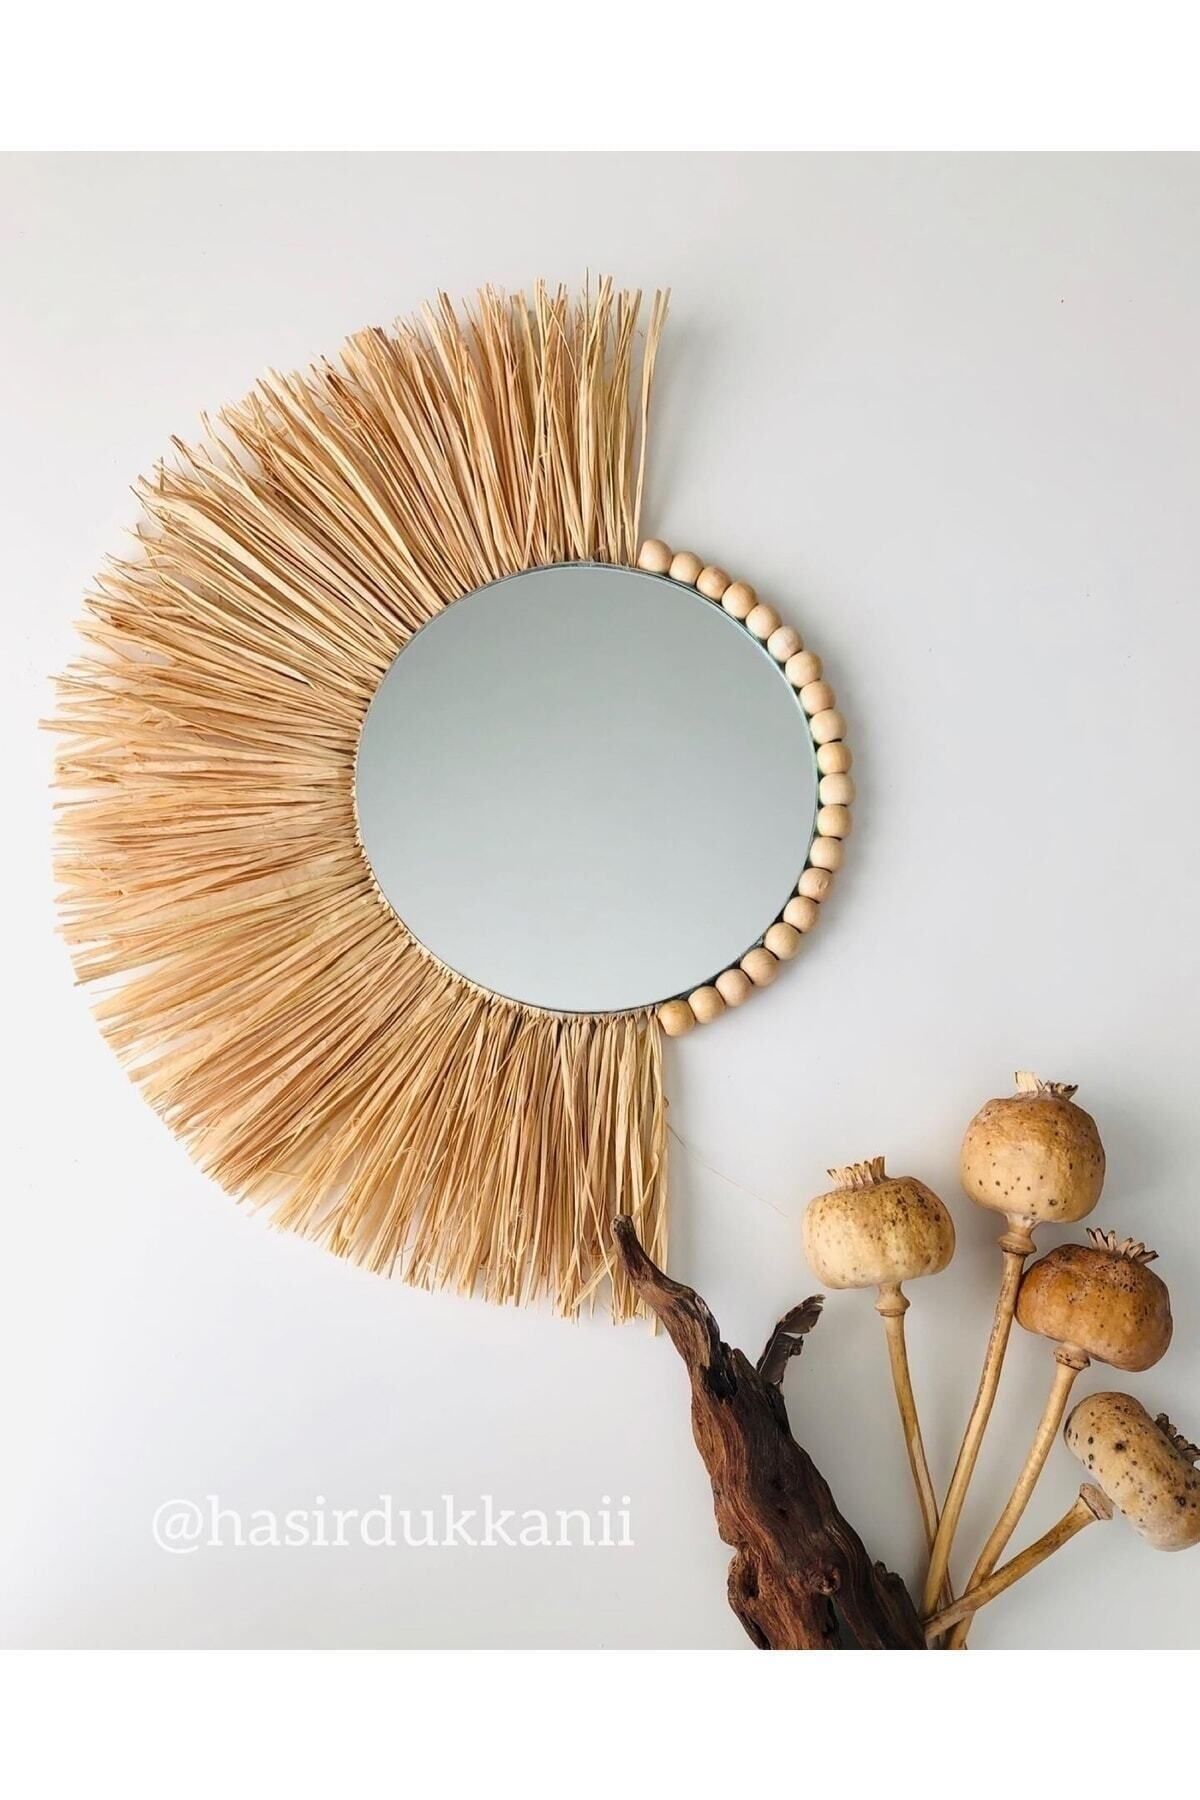 Hasirdukkanii El Yapımı Dekoratif Ayna Duvar Aynası Rafya Ayna Hasır Ayna